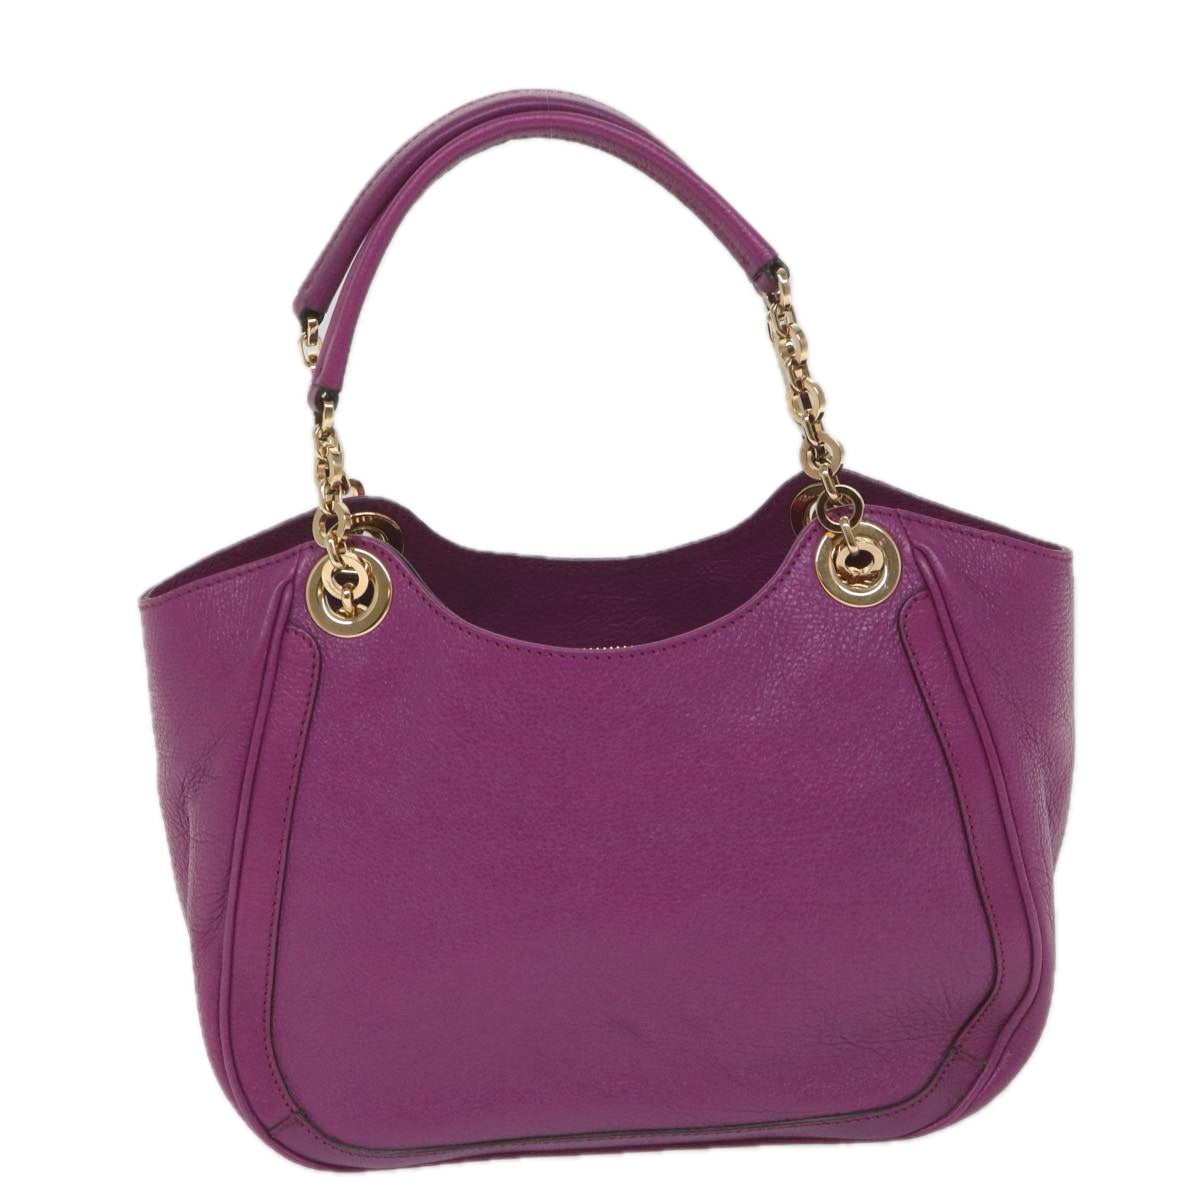 Salvatore Ferragamo Gancini Chain Tote Bag Leather Purple Auth 58628 - 0